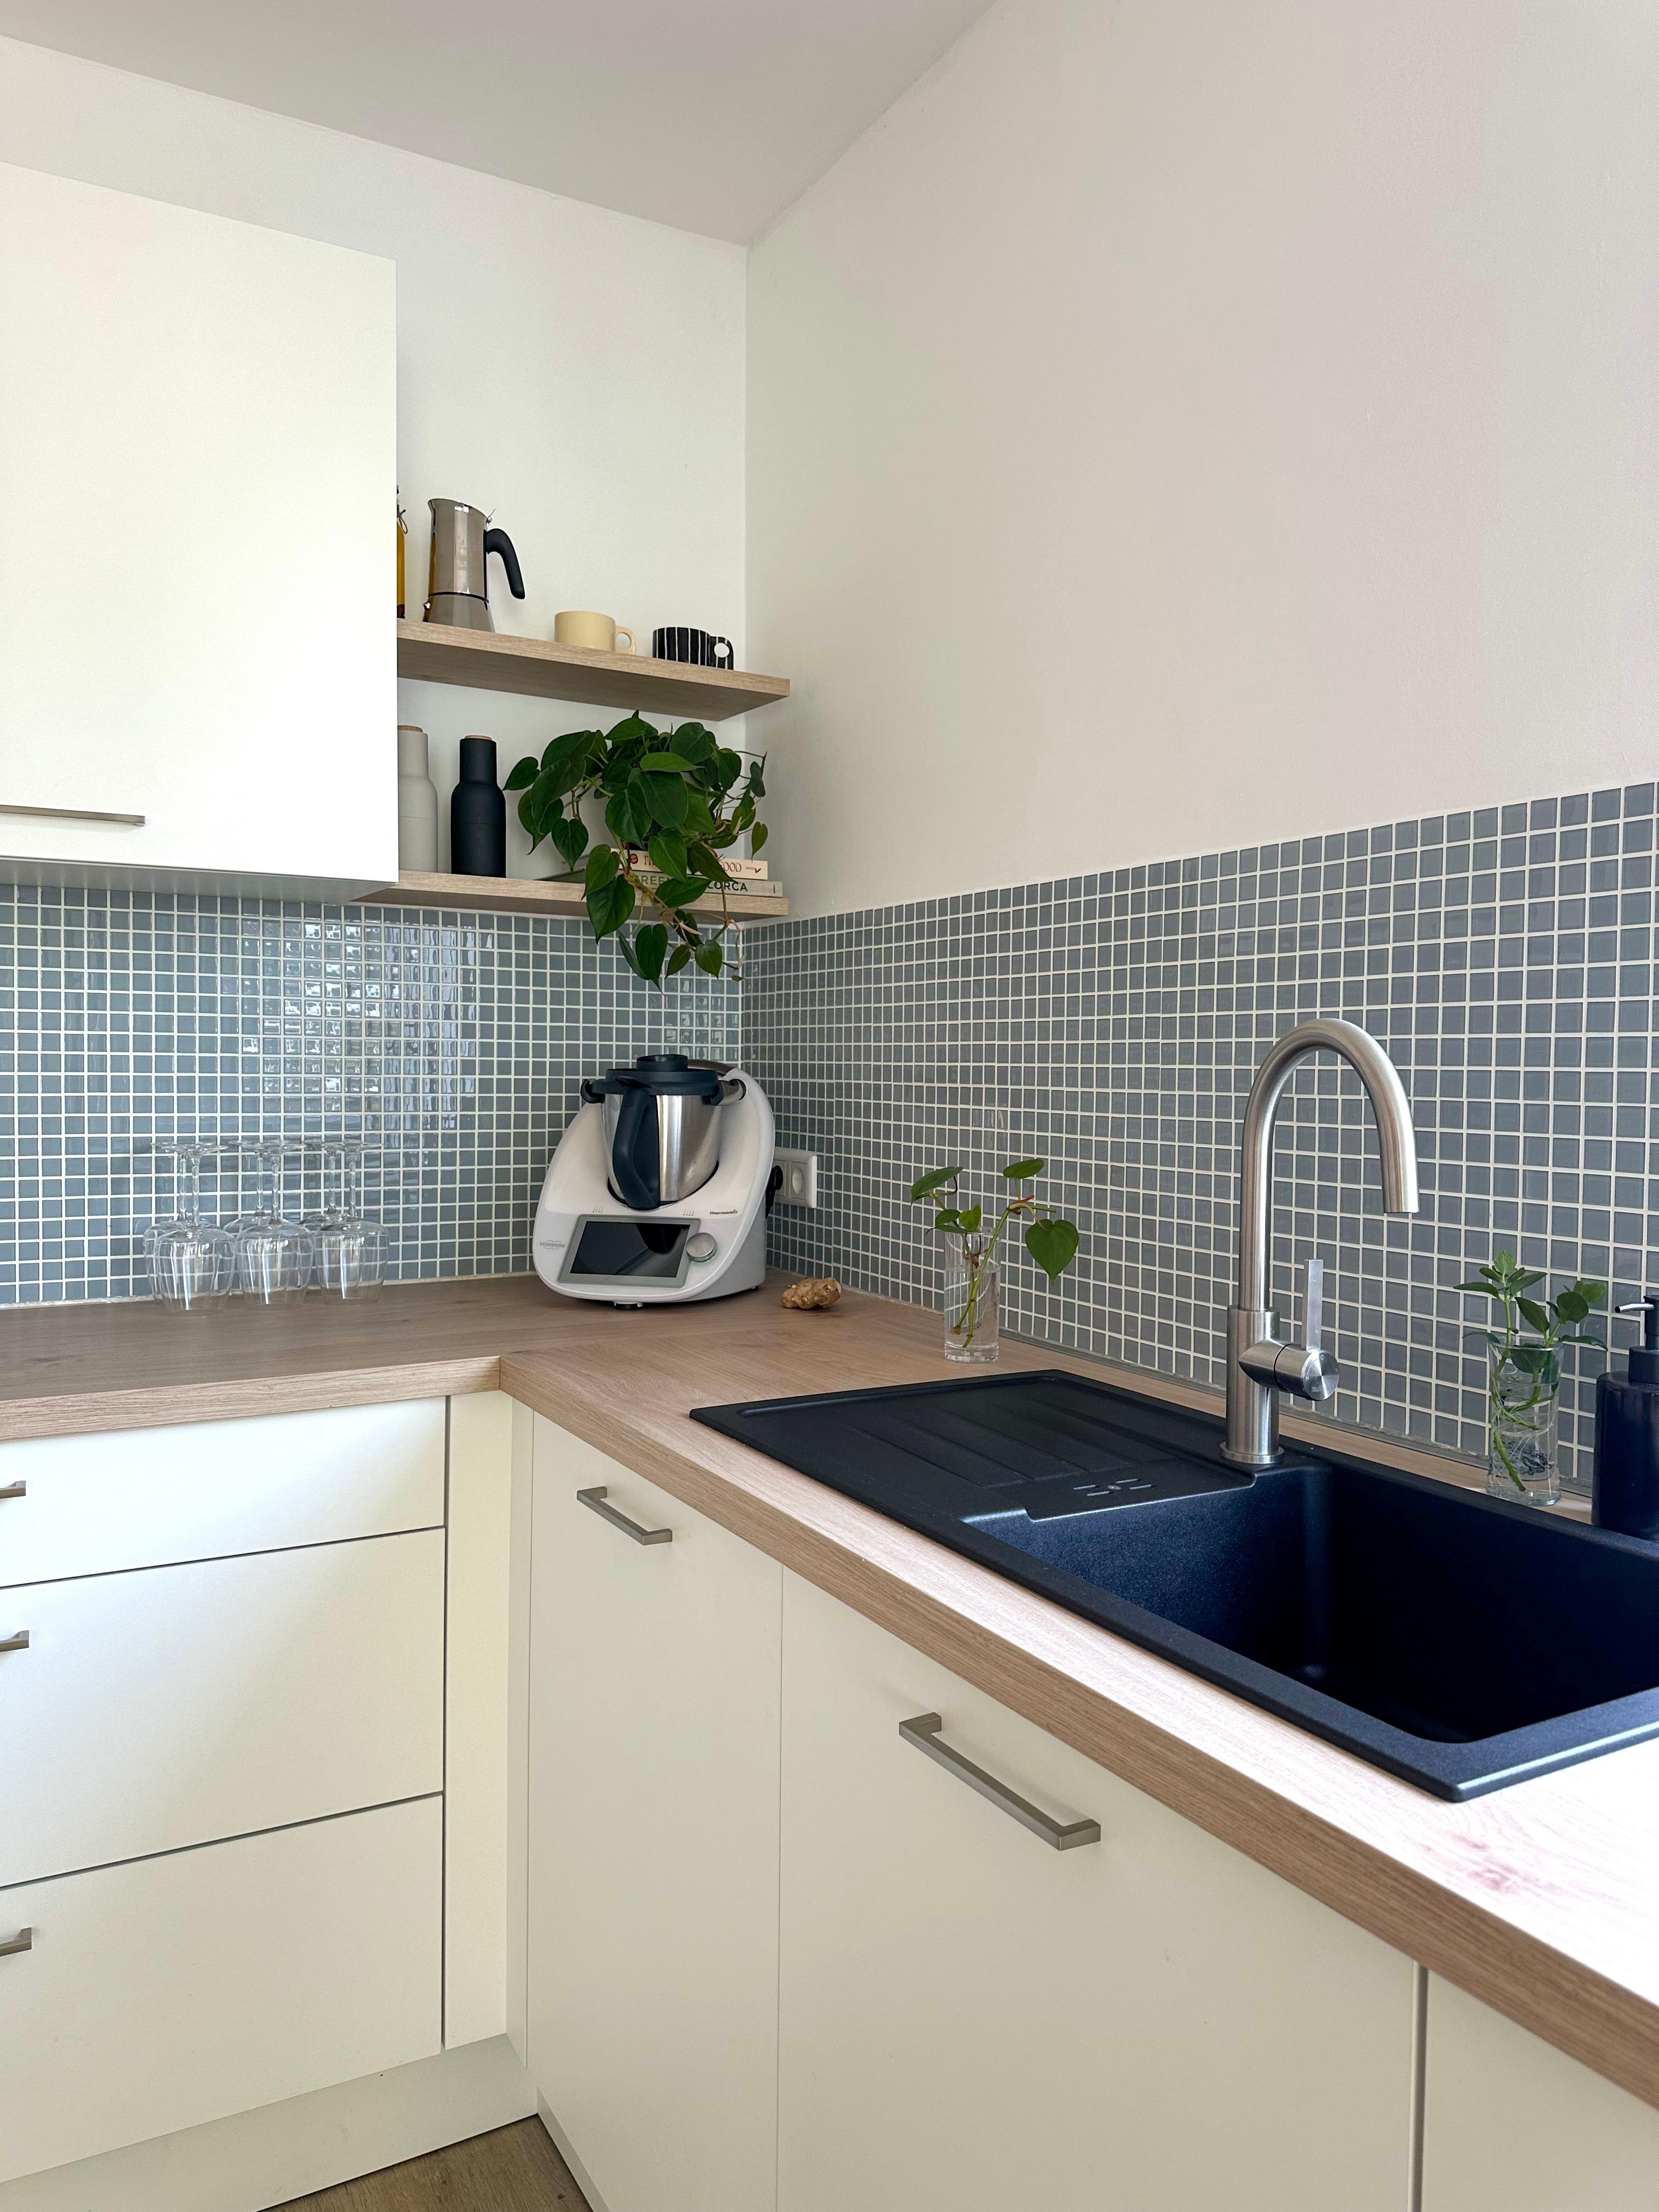 Küche 1/3 #küche #weißeküche #fliesenspiegel #mosaikfliesen #küchenideen #küchendeko #küchenliebe #couchliebt 